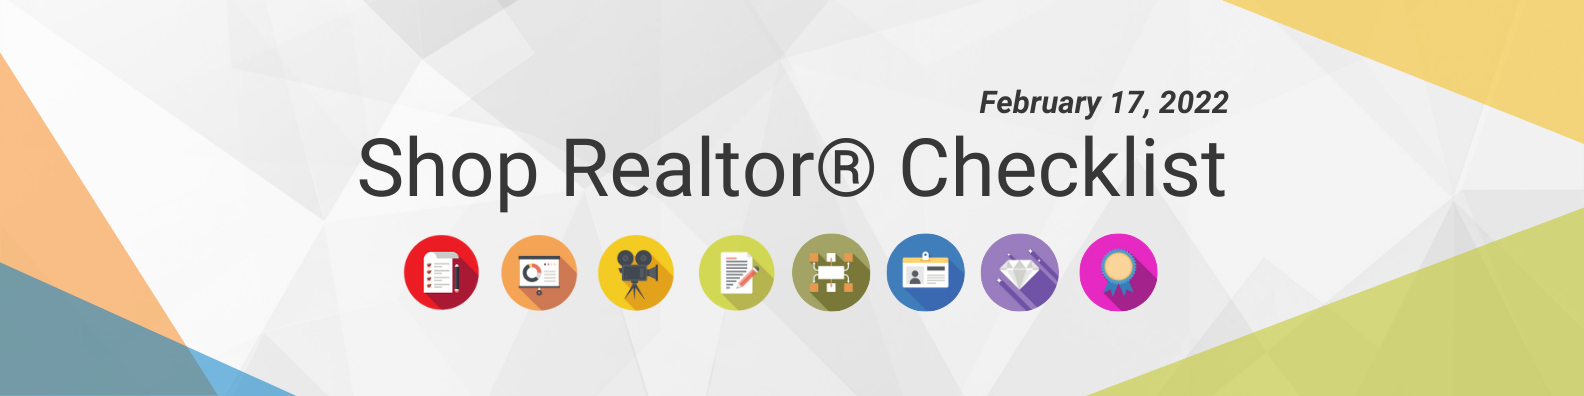 Shop Realtor® Checklist feb 17